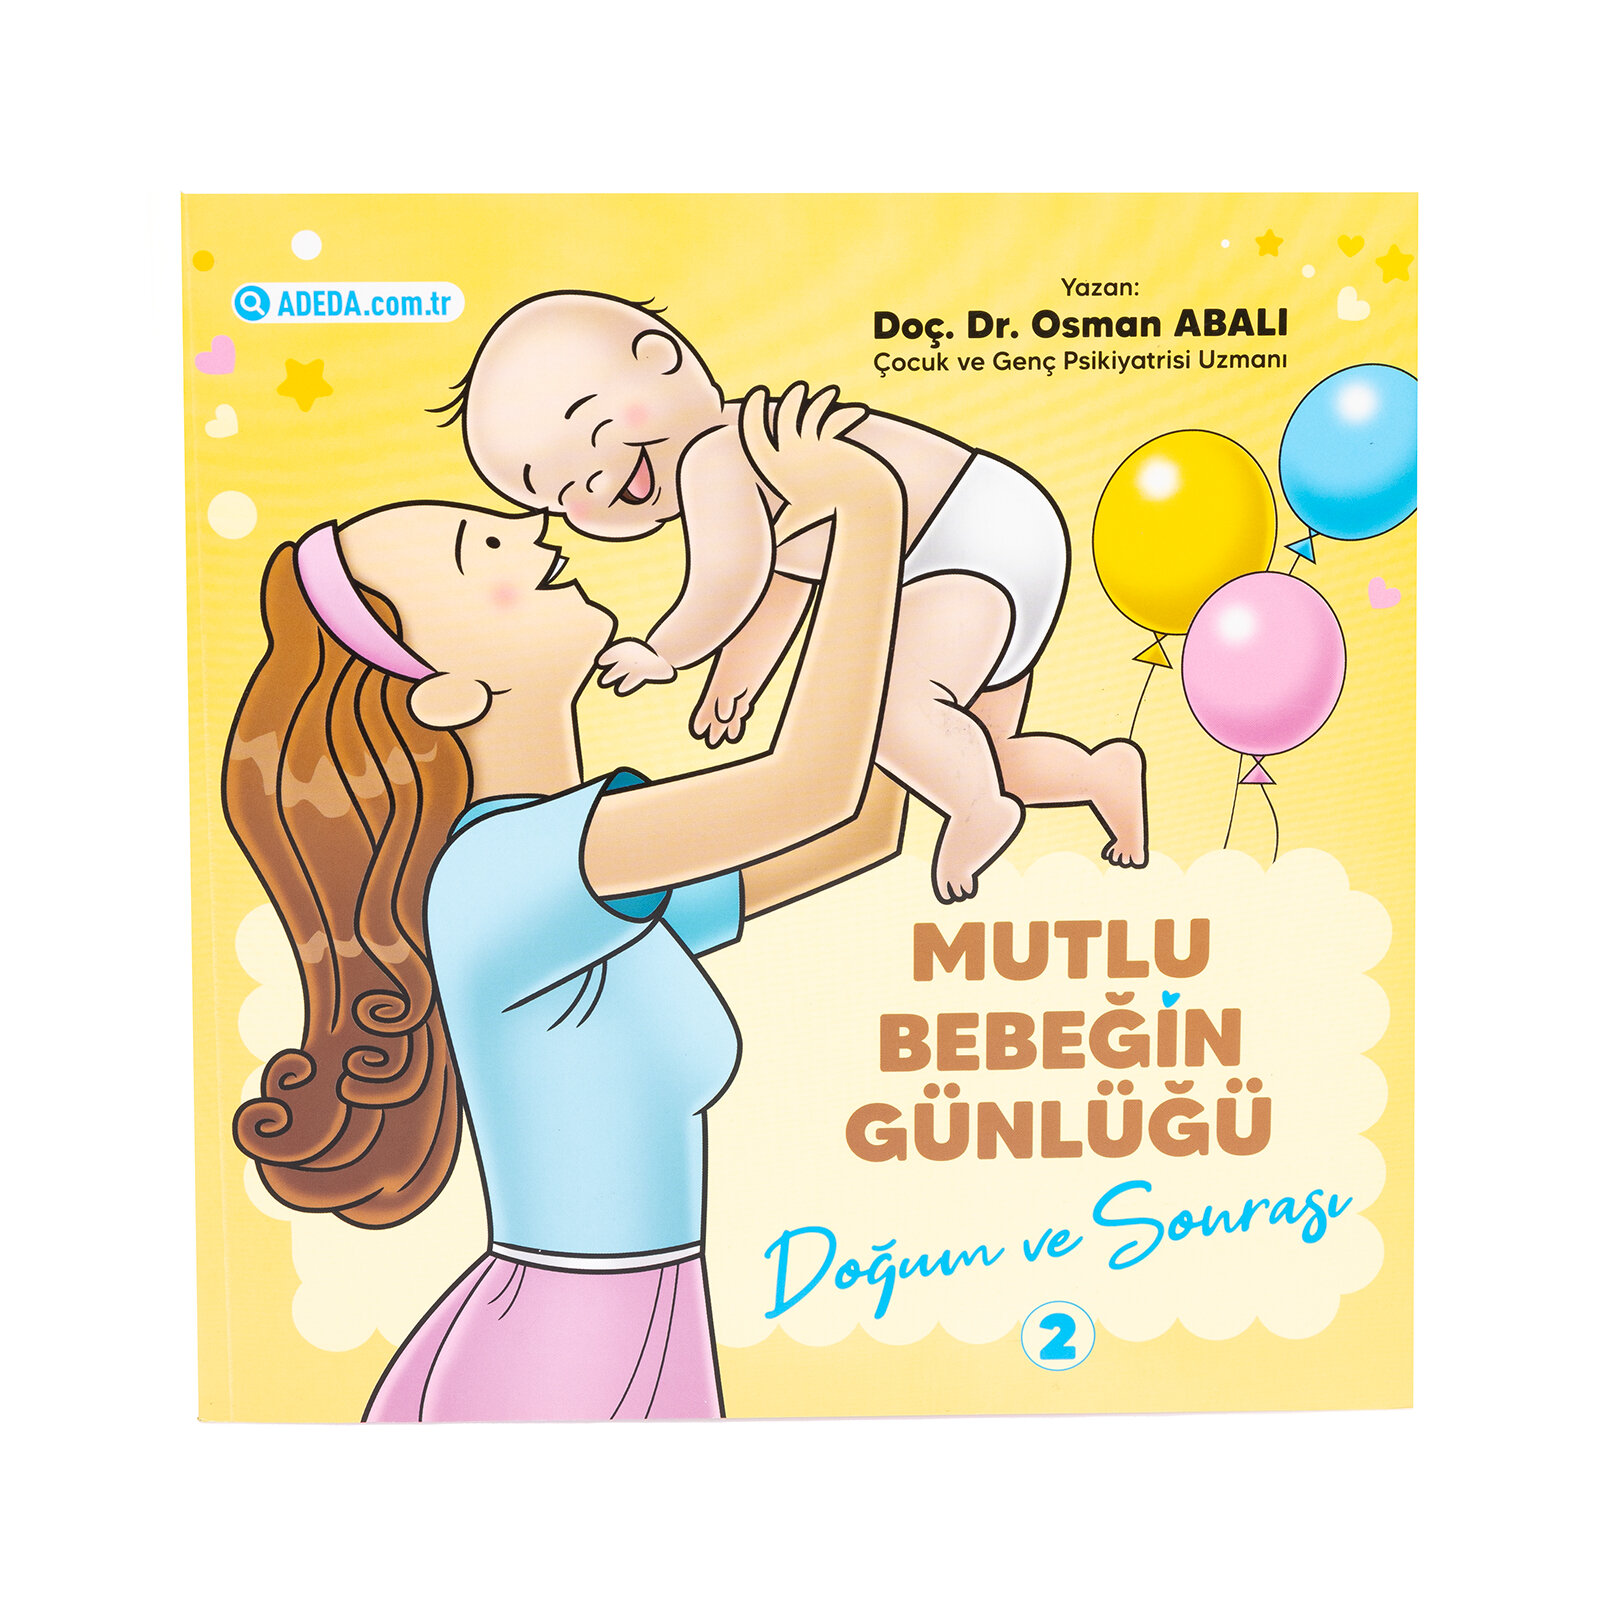 Mutlu Bebeğin Günlüğü - 2 Doğum ve Sonrası Osman Abalı